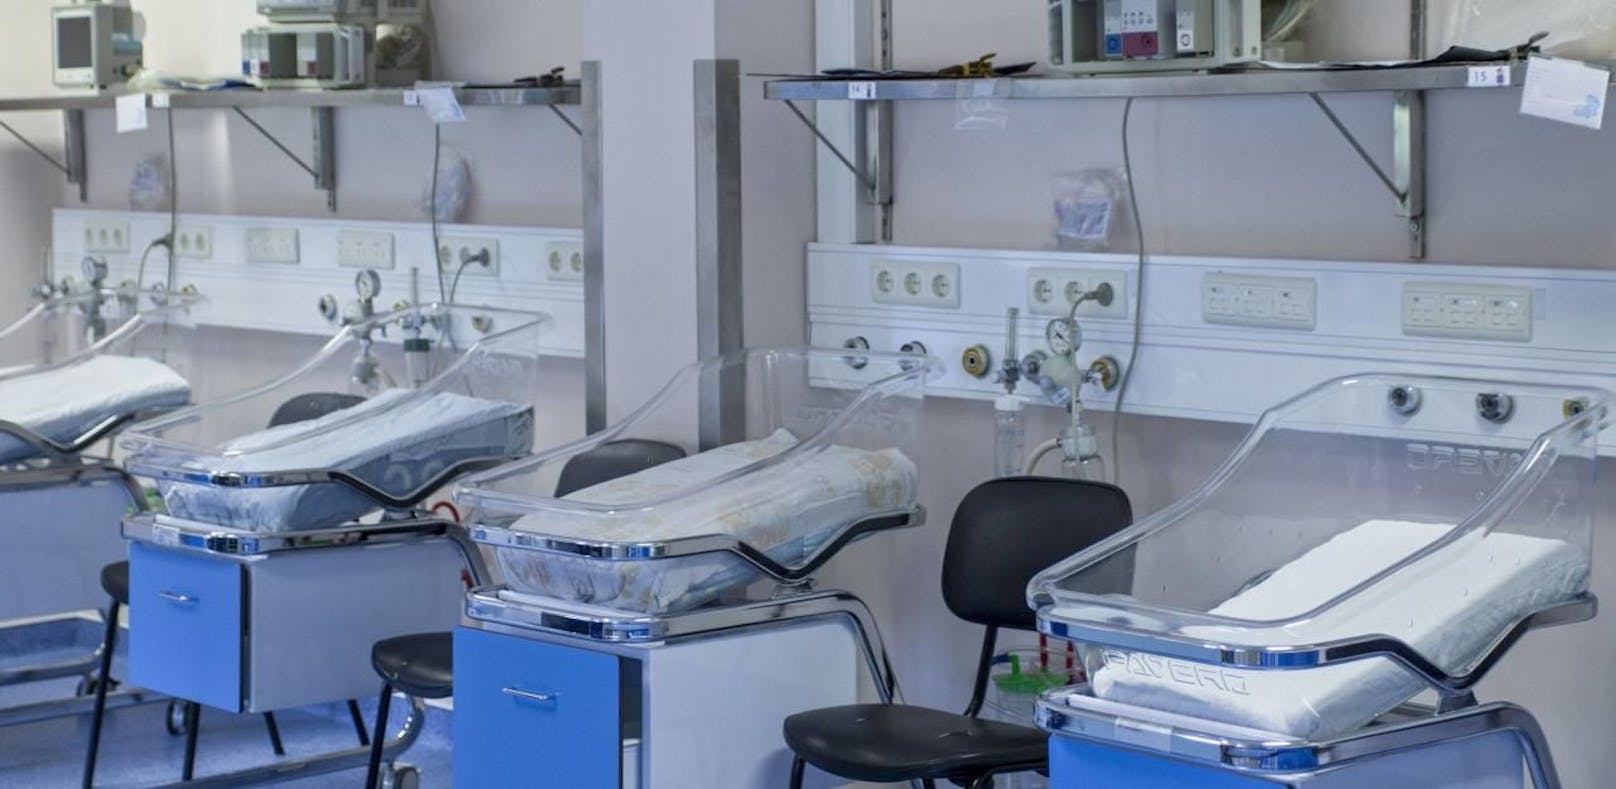 Sechs Babys starben nach Stromausfall im Spital